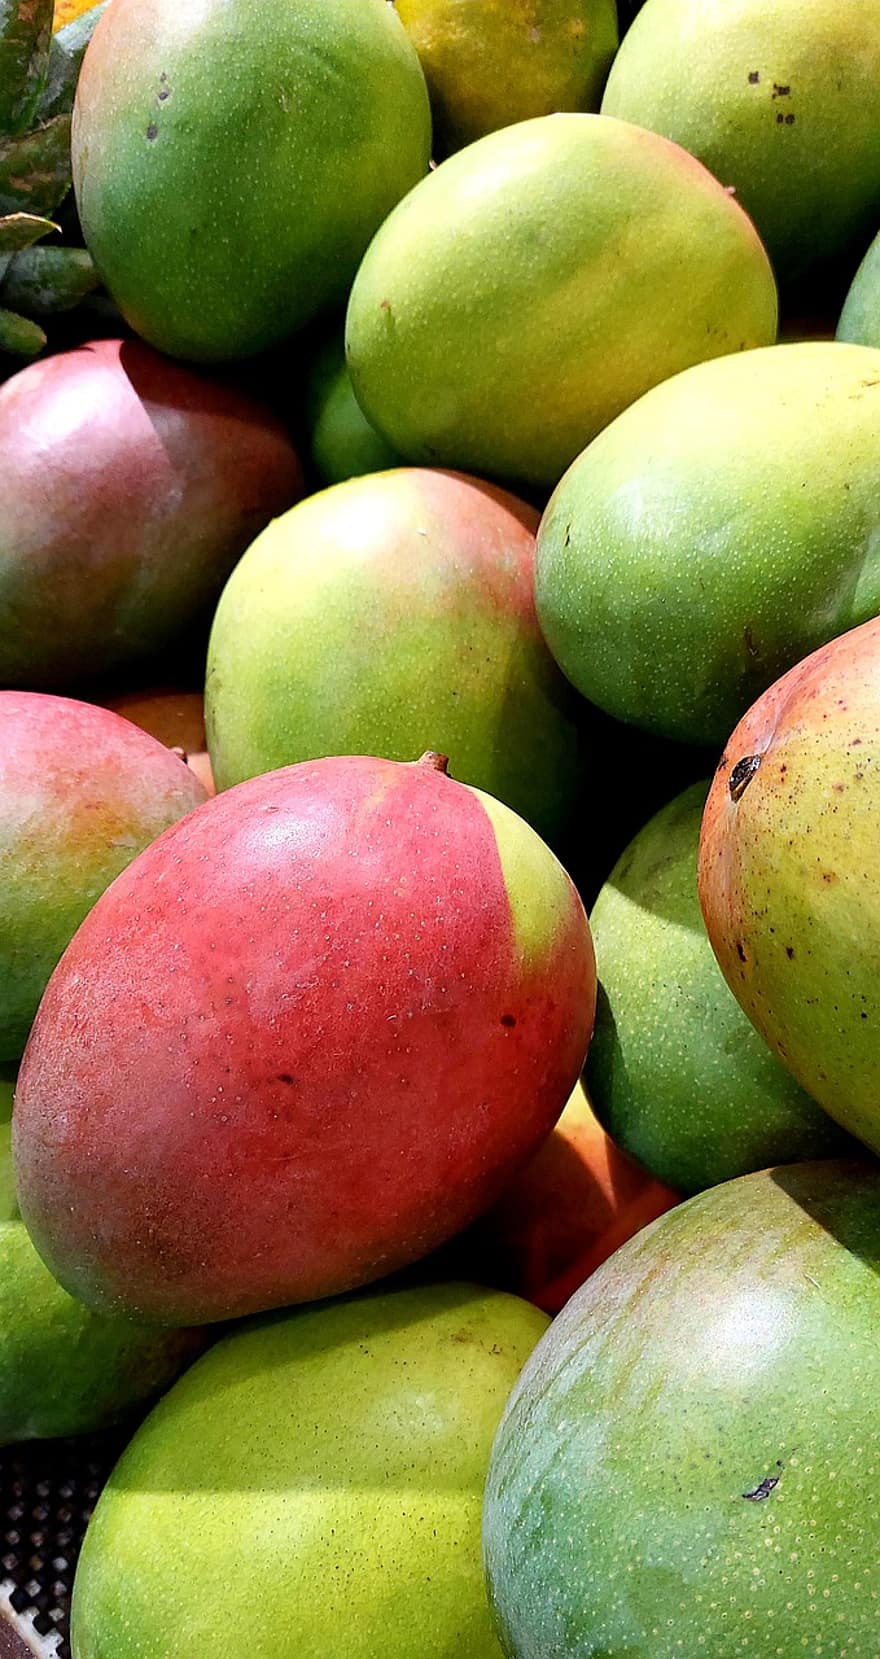 Mangoes, Fruits, Food, Fresh, Healthy, Ripe, Organic, Sweet, Produce, freshness, fruit